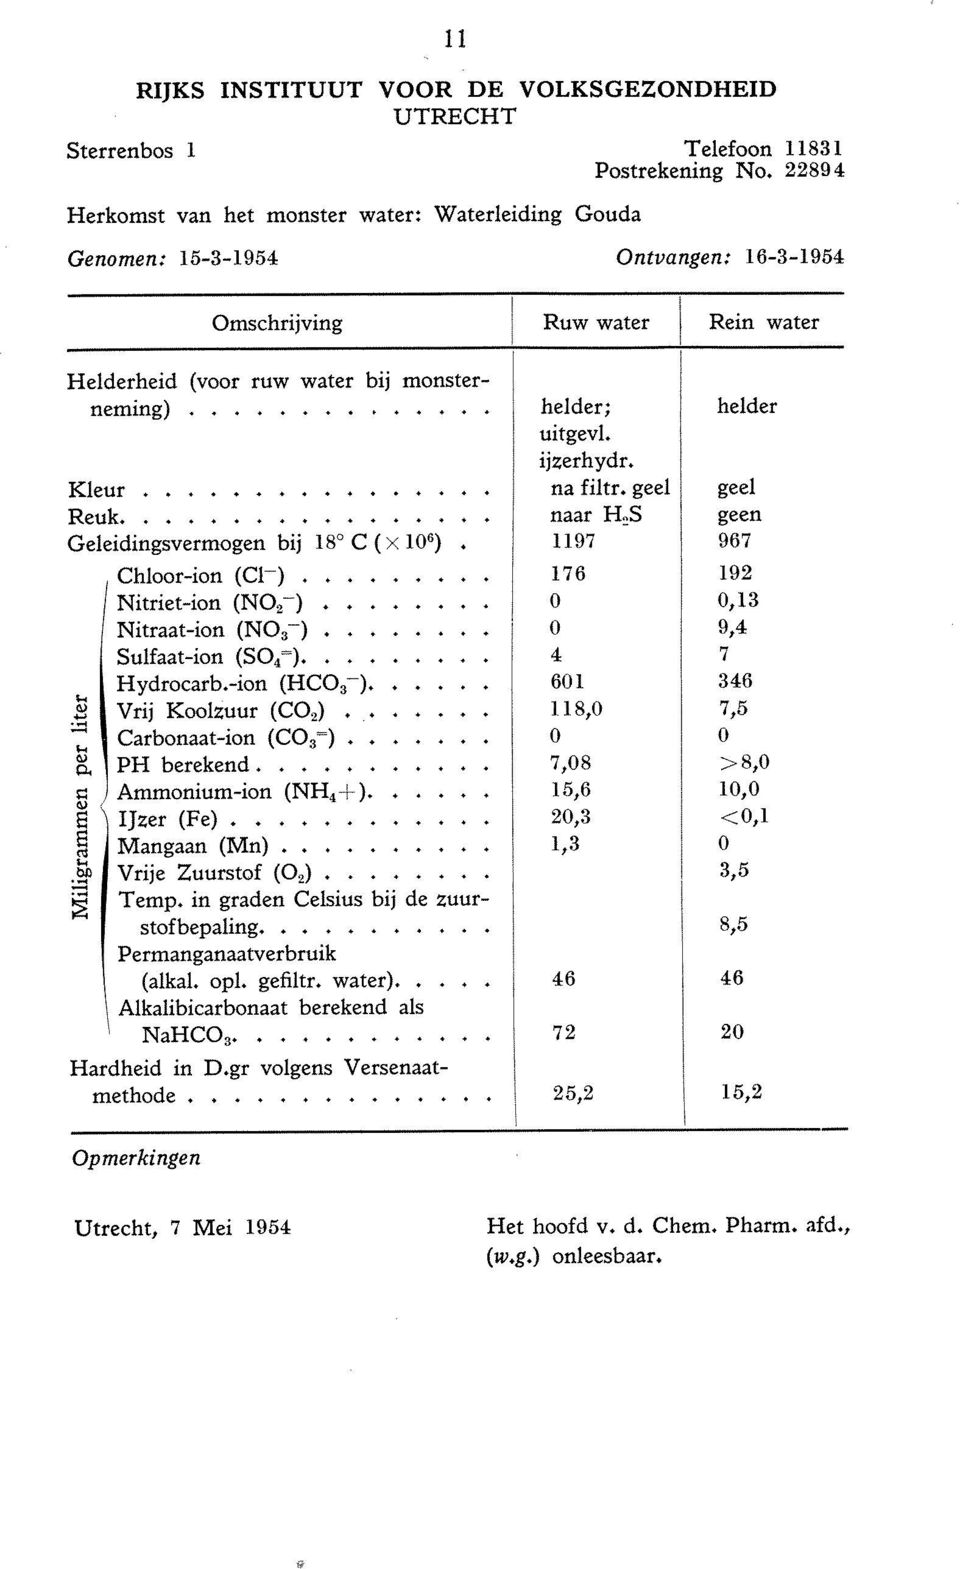 ... Geleidingsvermogen bij 18' C ( x 106). Chloor-ion (Cl-)... Nitriet-ion (NO,-)... Nitraat-ion (NO,-)... Sulfaat-ion (SO,=).... Hydrocarb.-ion (HCO,-).... Vrij Koolzuur (CO,)... Carbonaat-ion (CO,=).